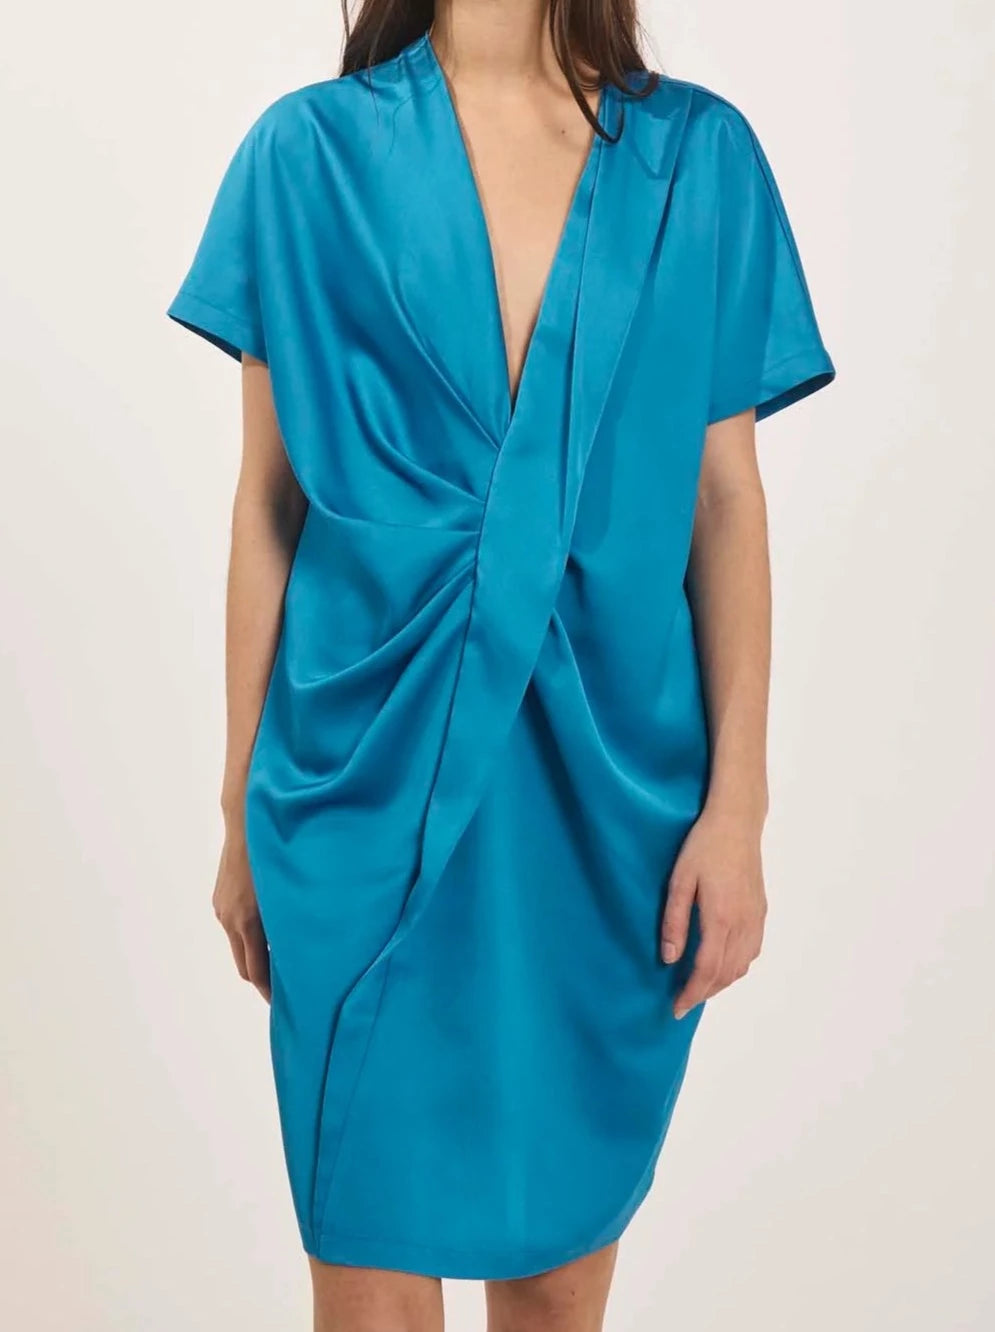 ELLA DRESS | IBIZA BLUE BY NORR